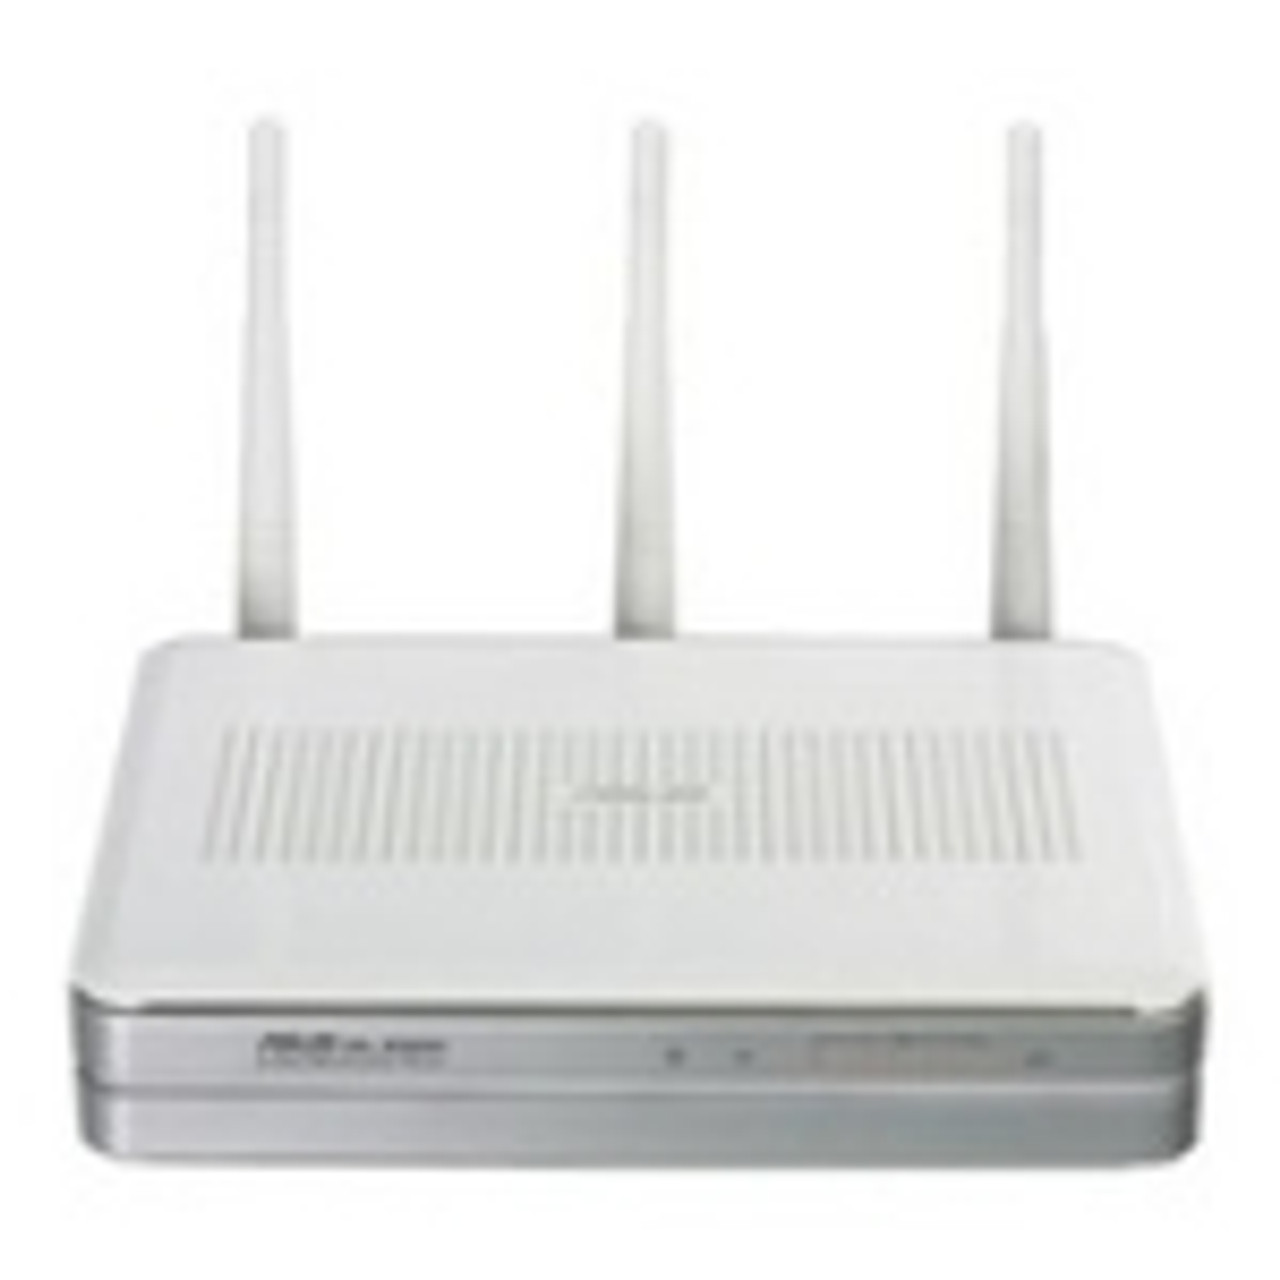 SYN24439 ASUS WL-500W Wireless Router 1 x 10/100Base-TX WAN, 4 x 10/100Base-TX LAN IEEE 802.11n (draft) (Refurbished)